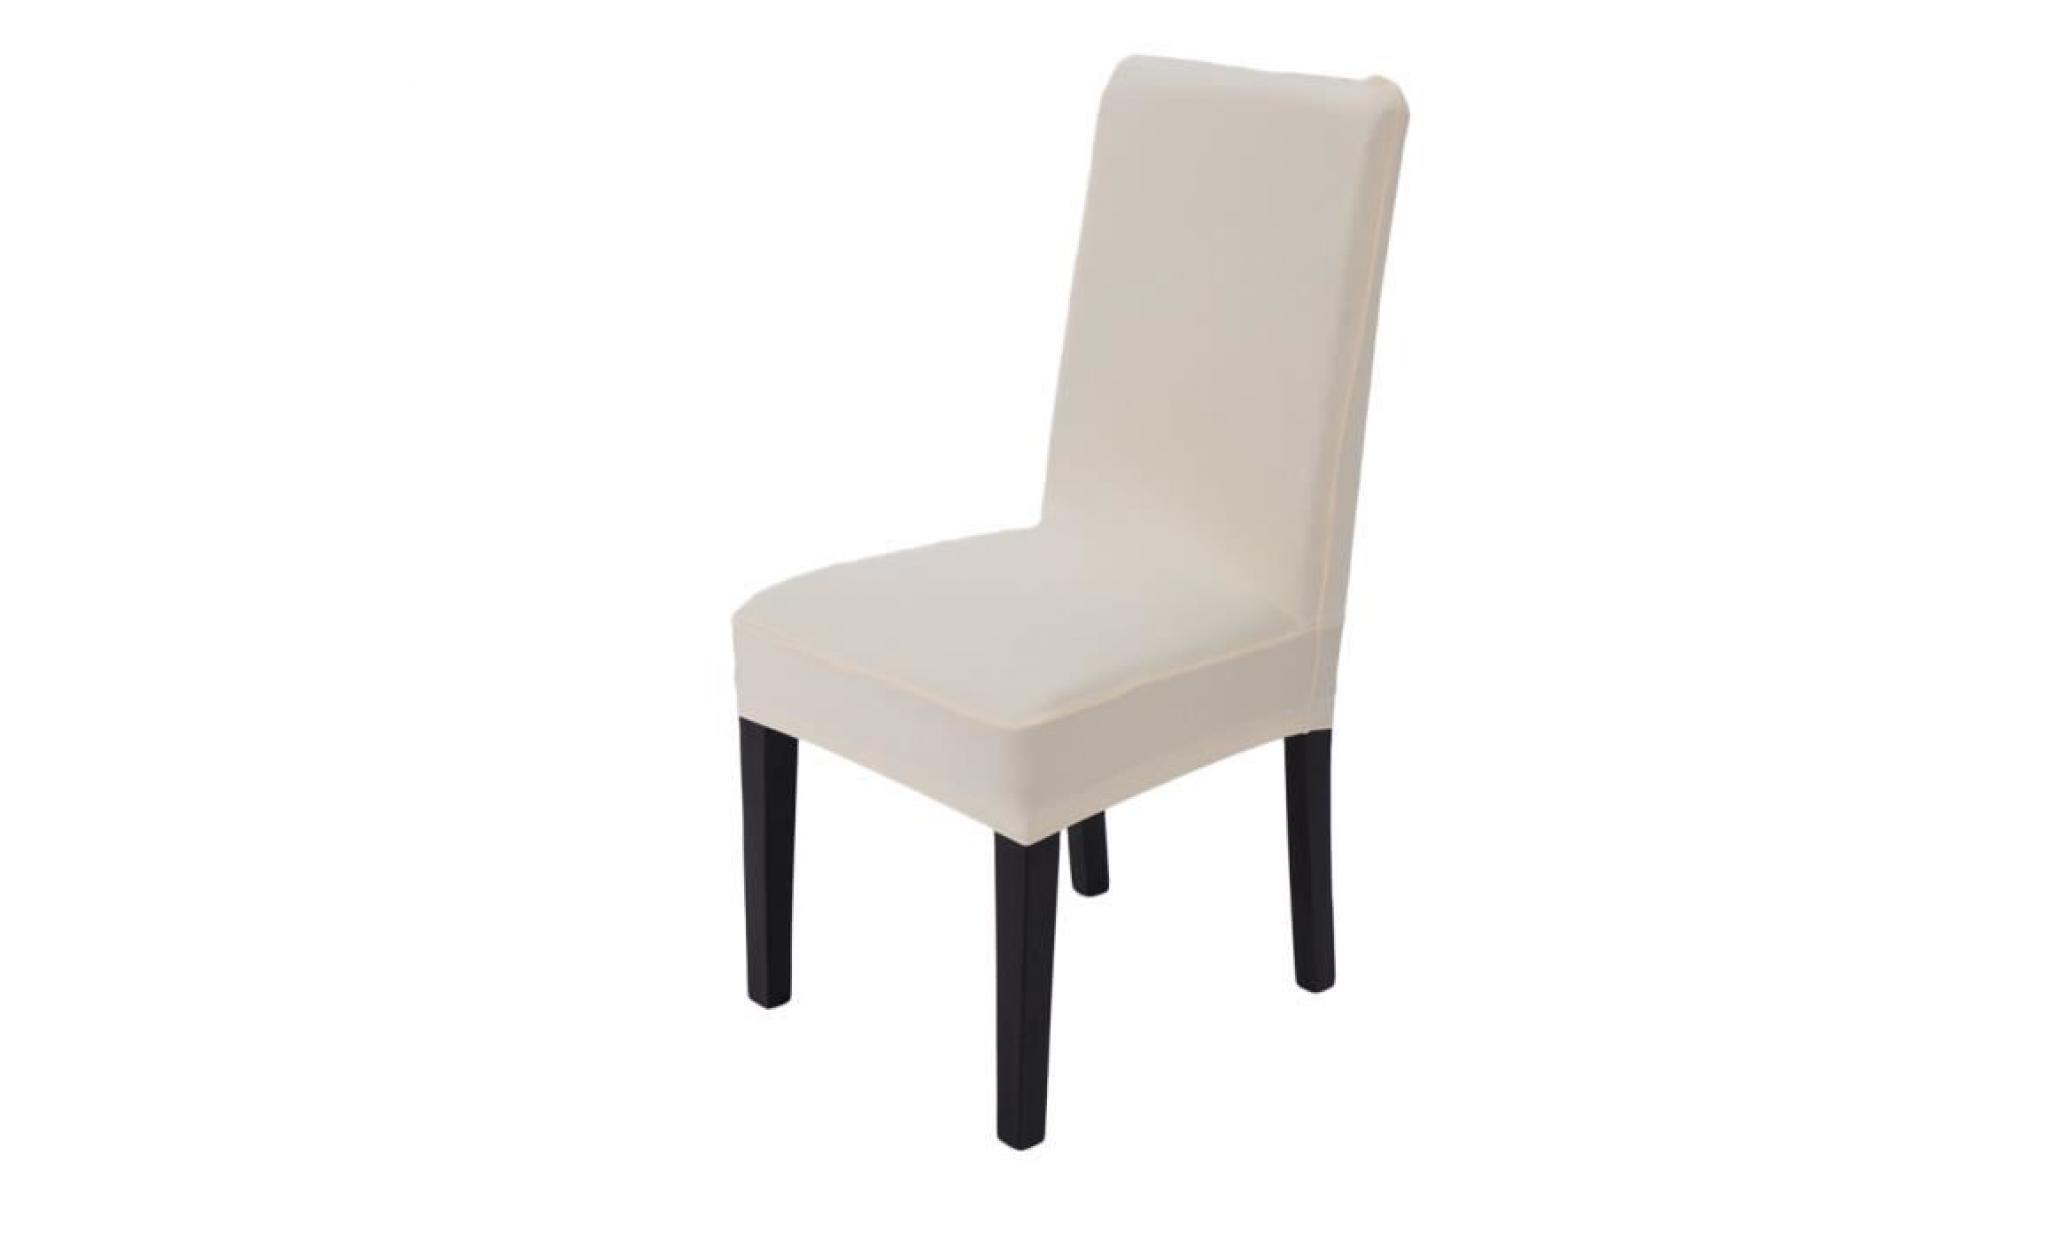 1pcs housse de chaise salle à manger extensible, housse de chaise dossier haut, protection chaise en Élasthanne   blanc